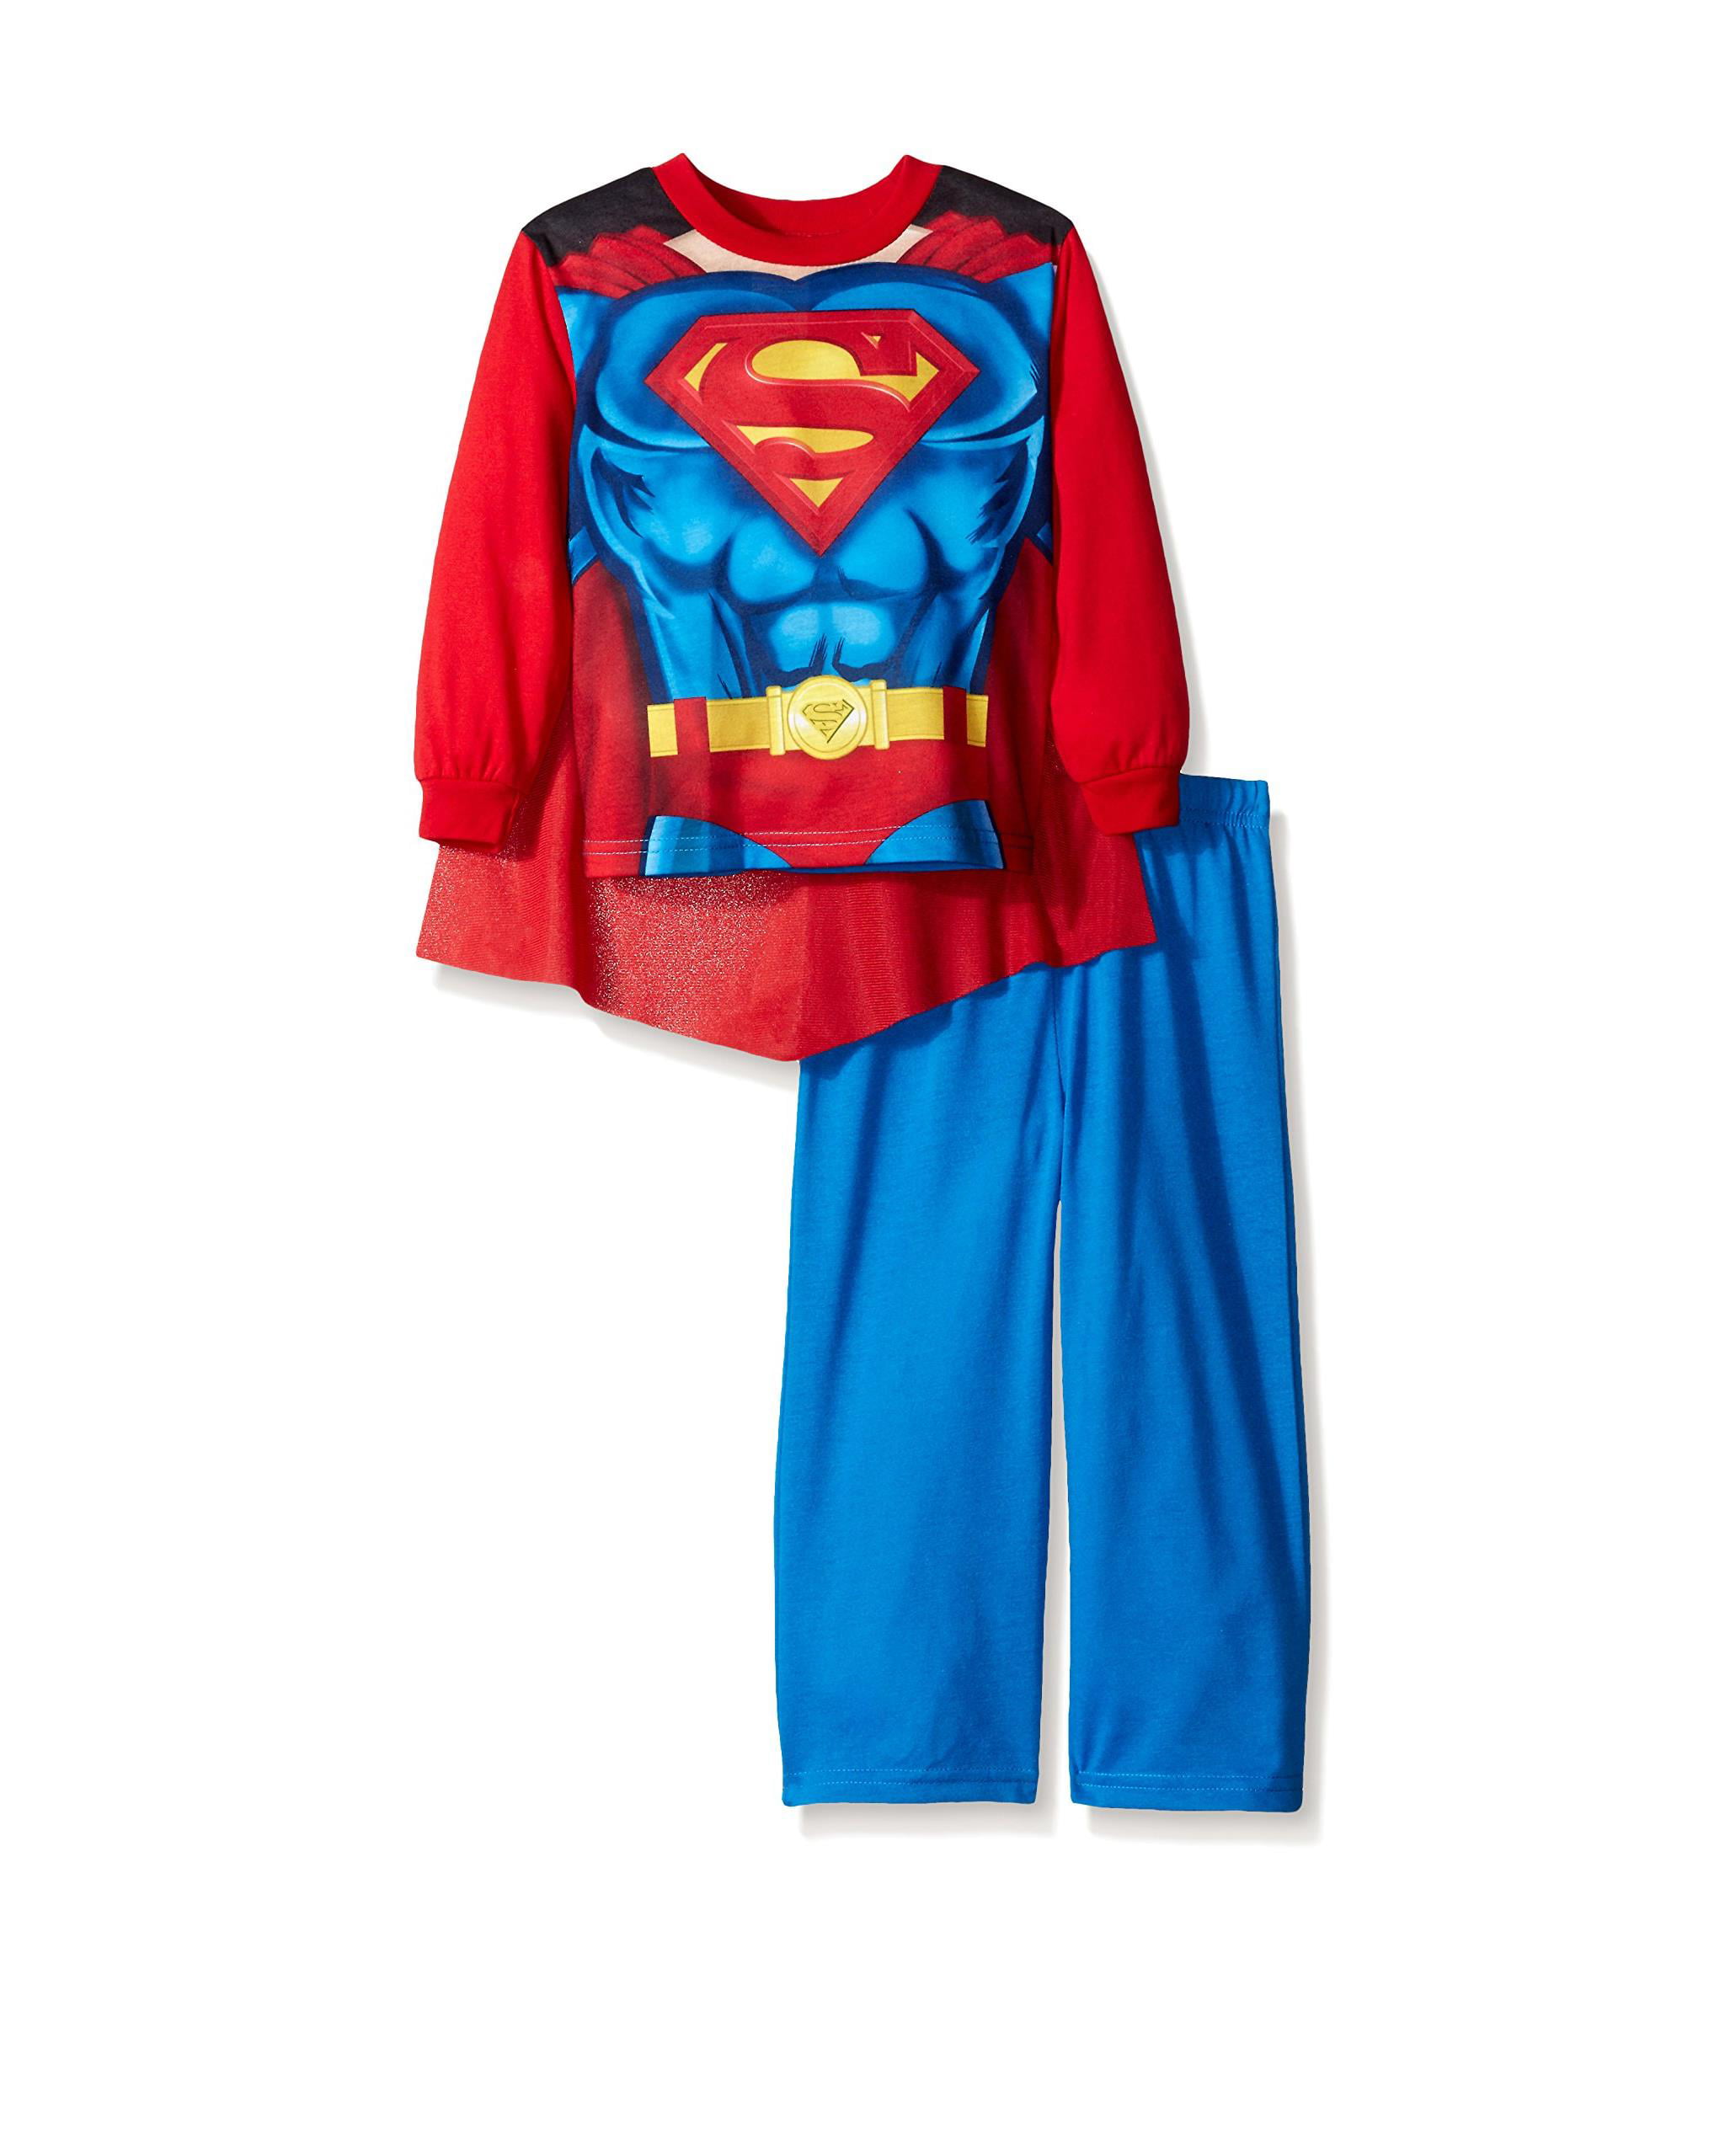 Justice League Toddler Boys 2pc Snug Fit Pajama Pant Set Size 2T 3T 4T 